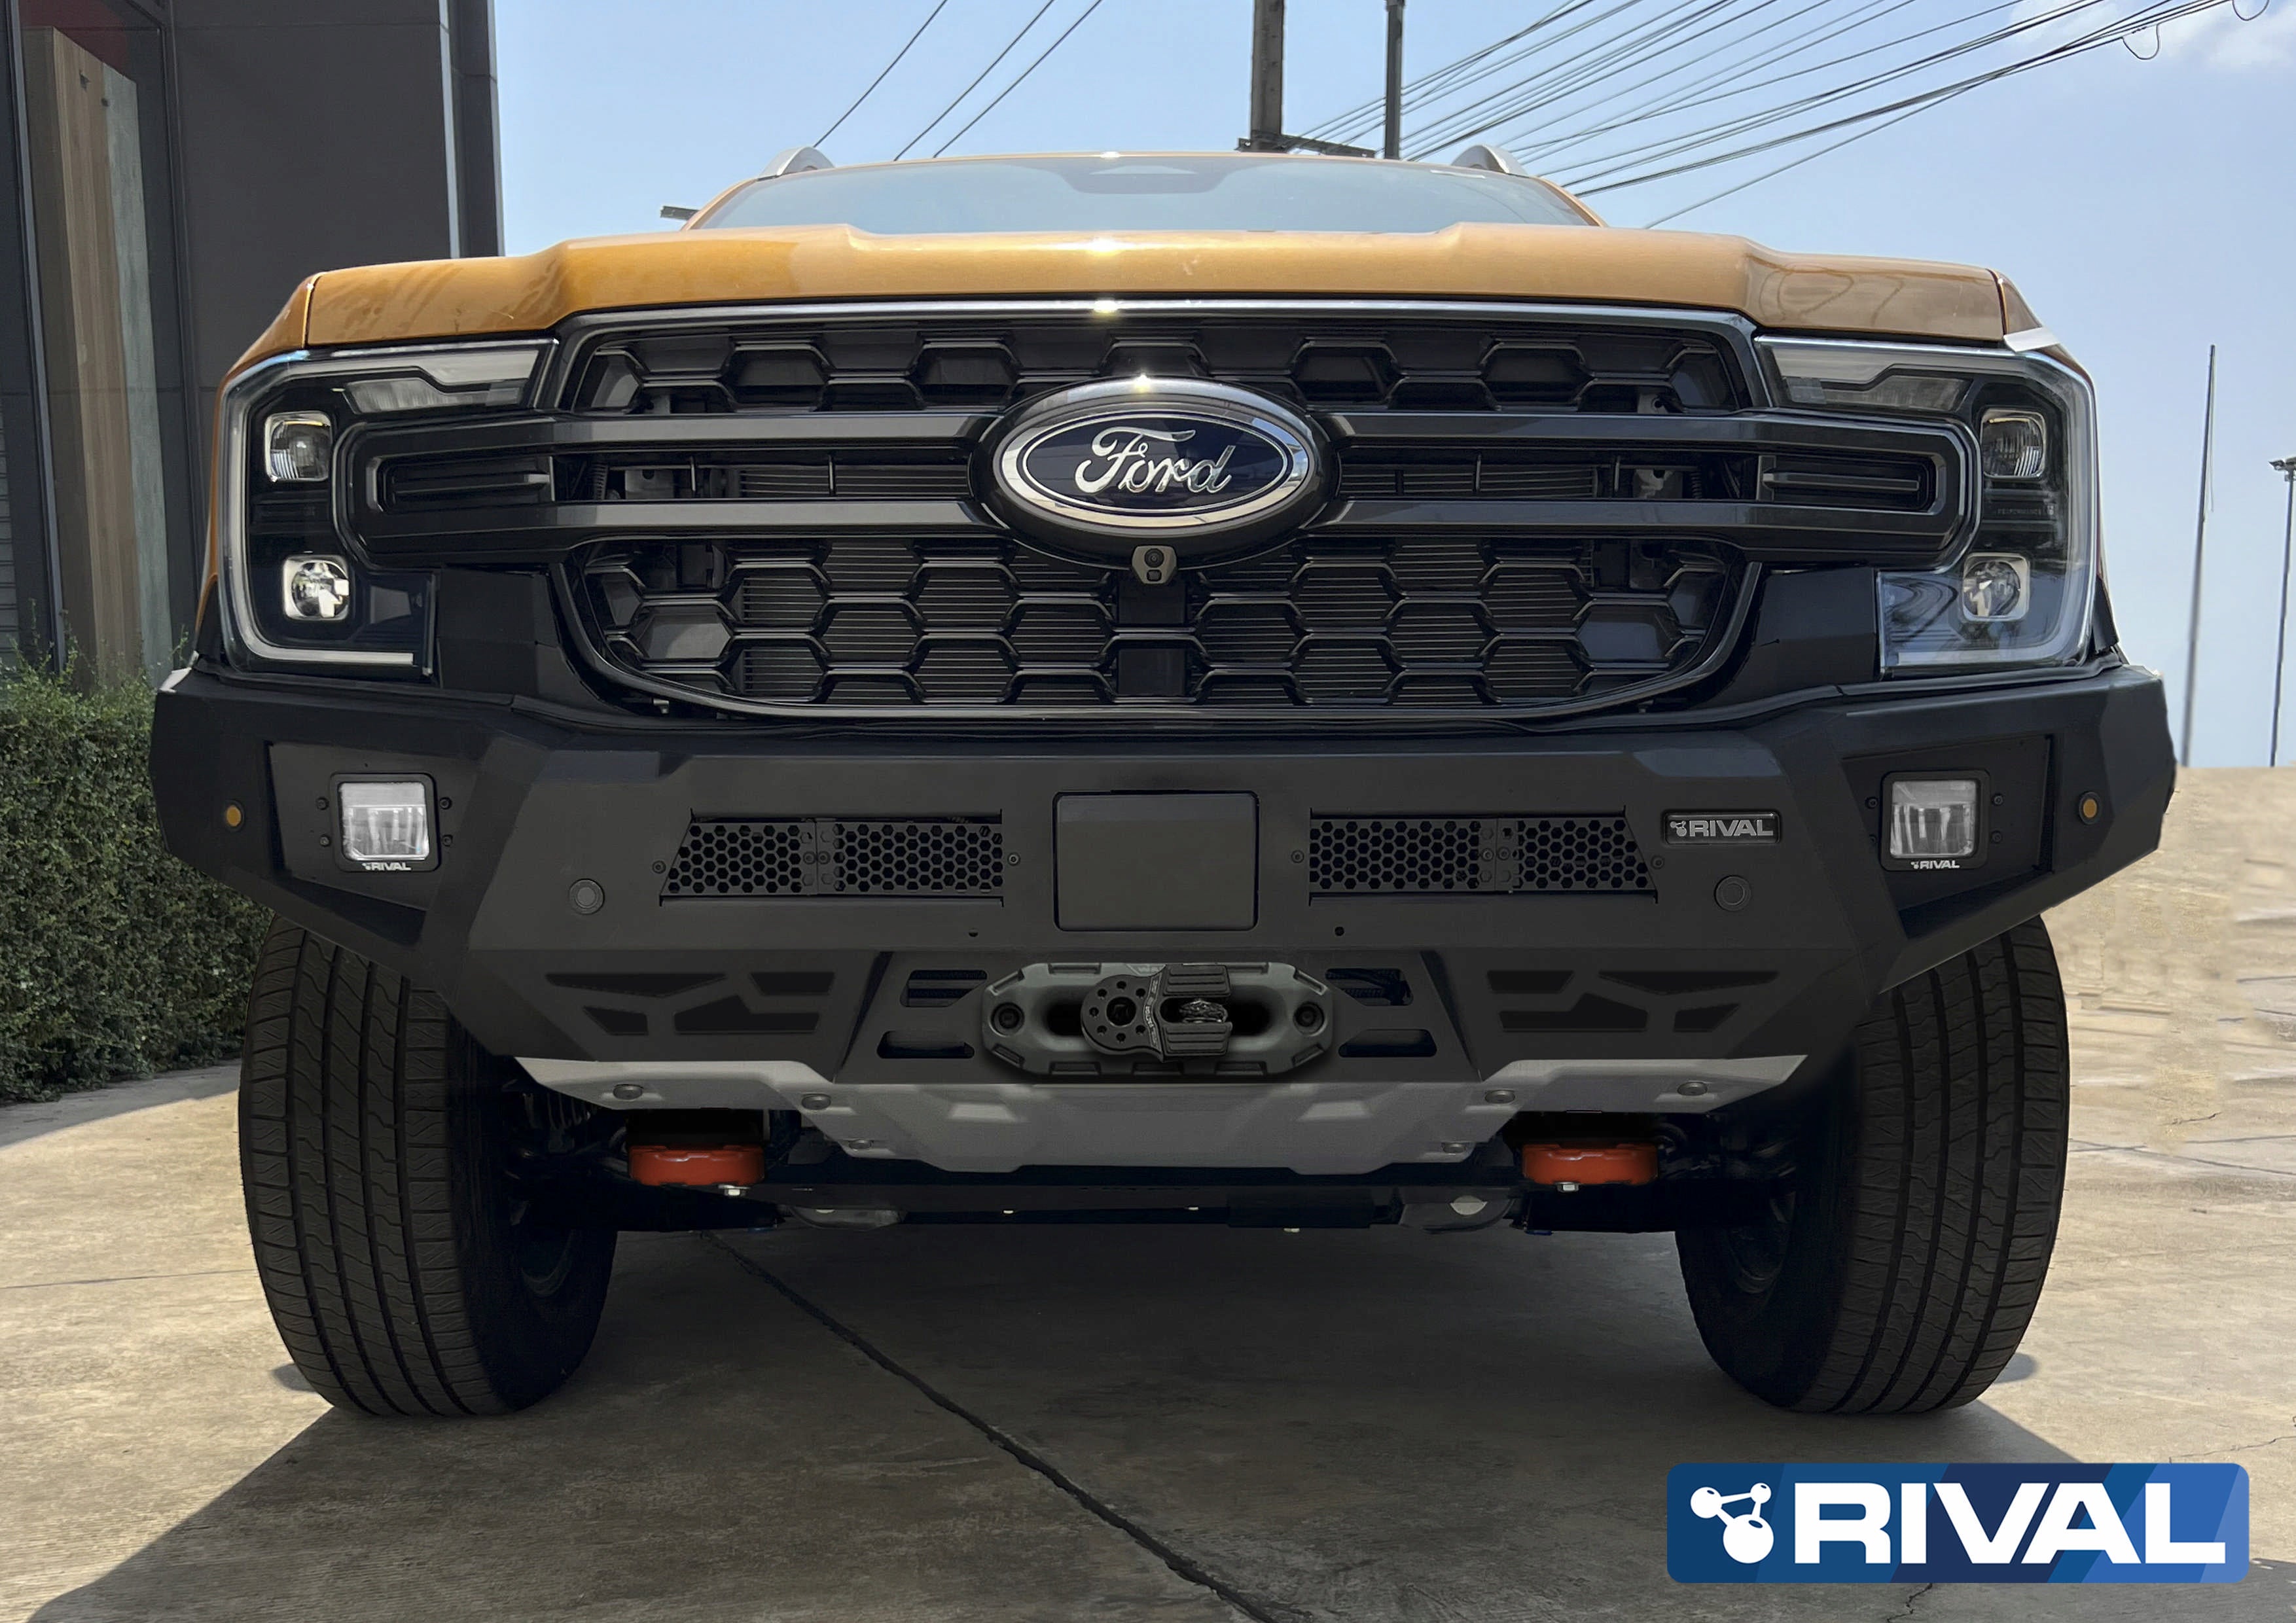 RIVAL4x4 Alu HD-Seilwindenstoßstange für Ford Ranger Next-Gen 2022+